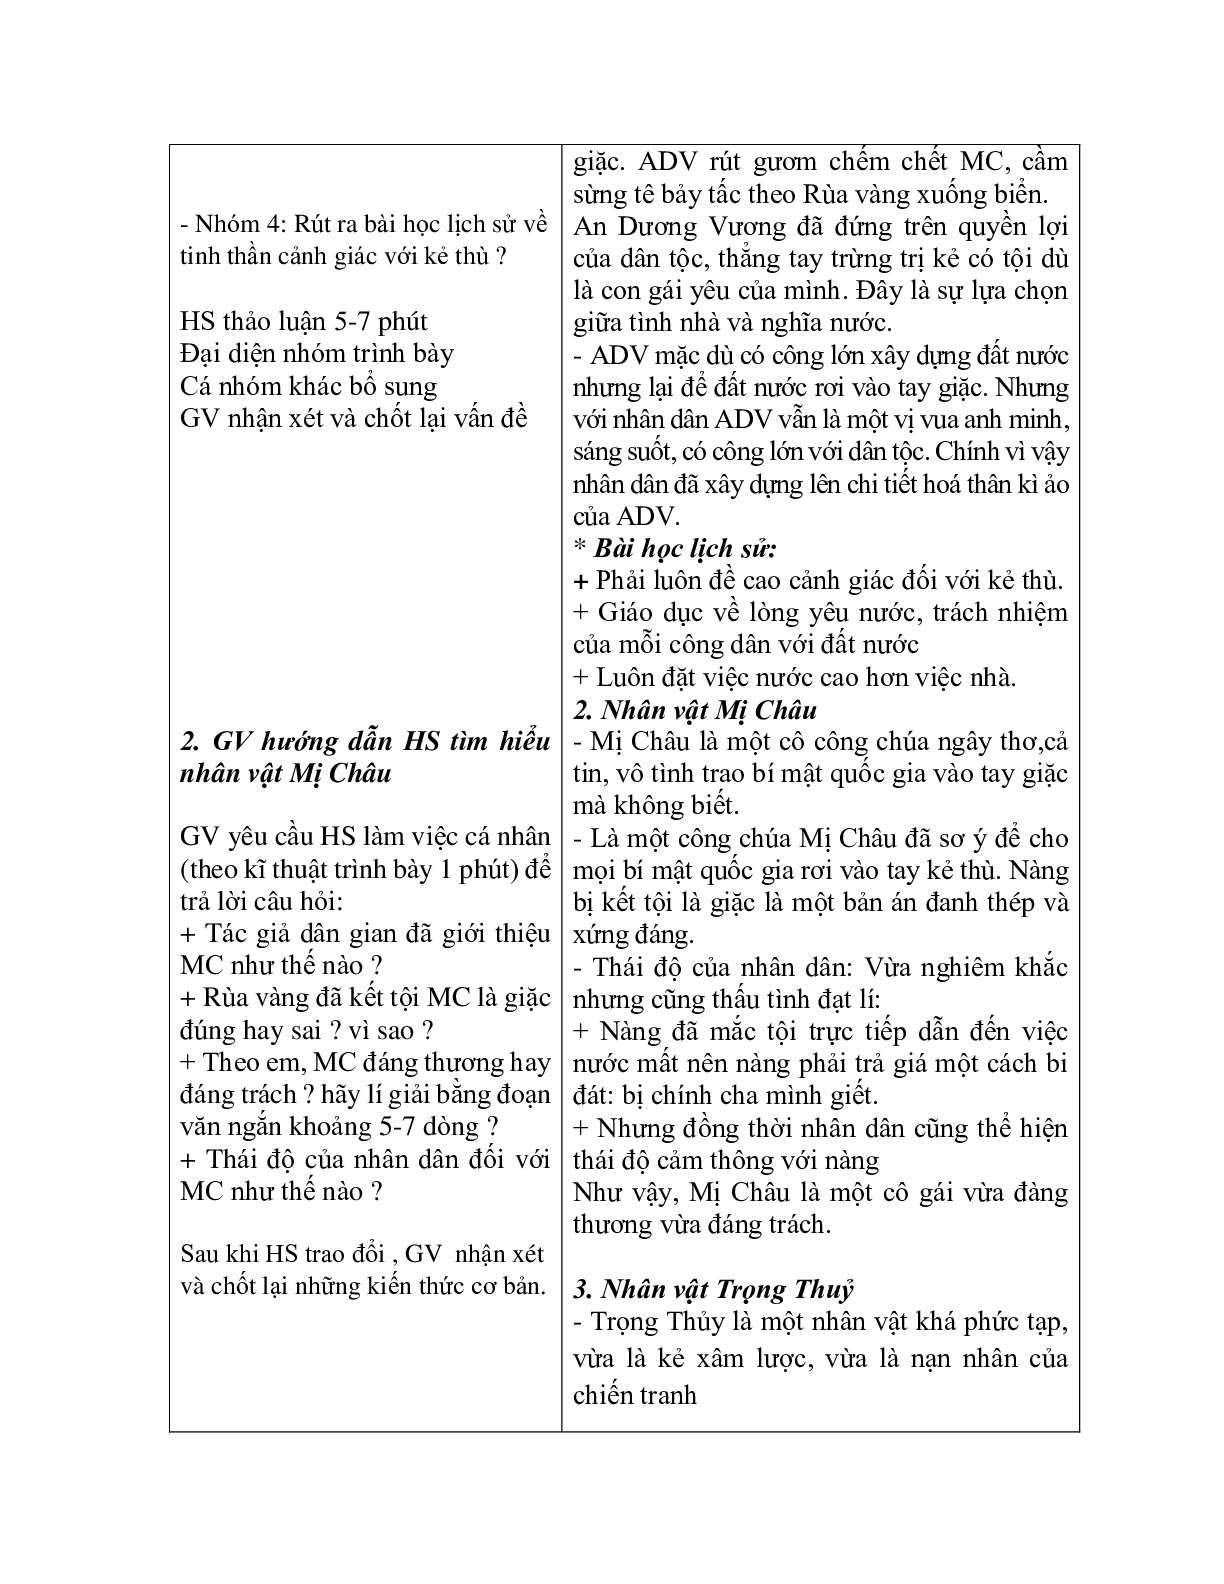 Giáo án ngữ văn lớp 10 Tiết 12, 13: Truyện An Dương Vương và Mị Chậu Trọng Thủy (trang 5)